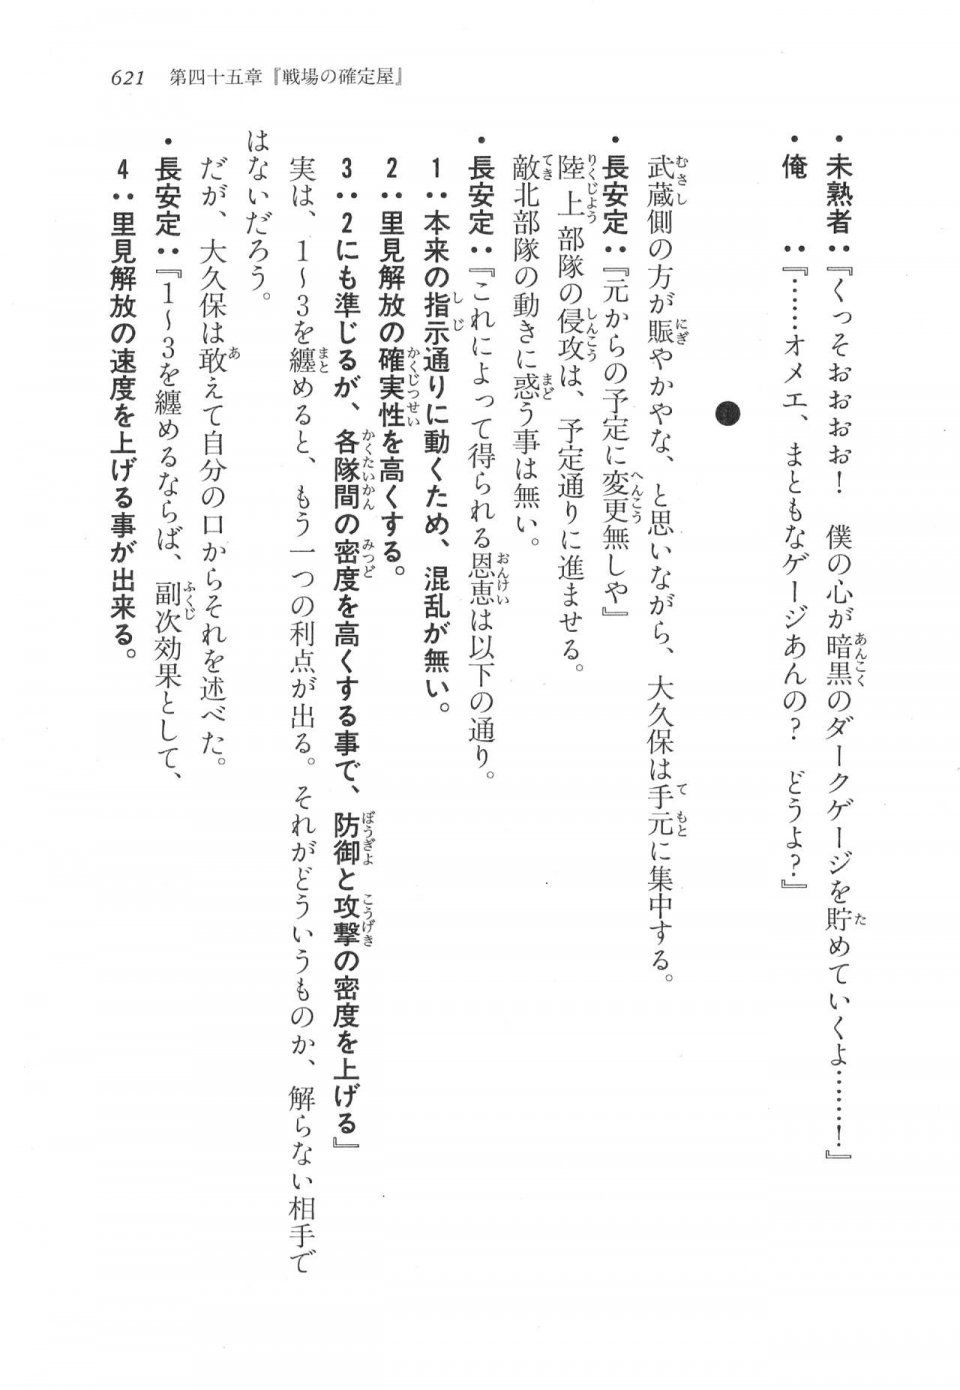 Kyoukai Senjou no Horizon LN Vol 17(7B) - Photo #623